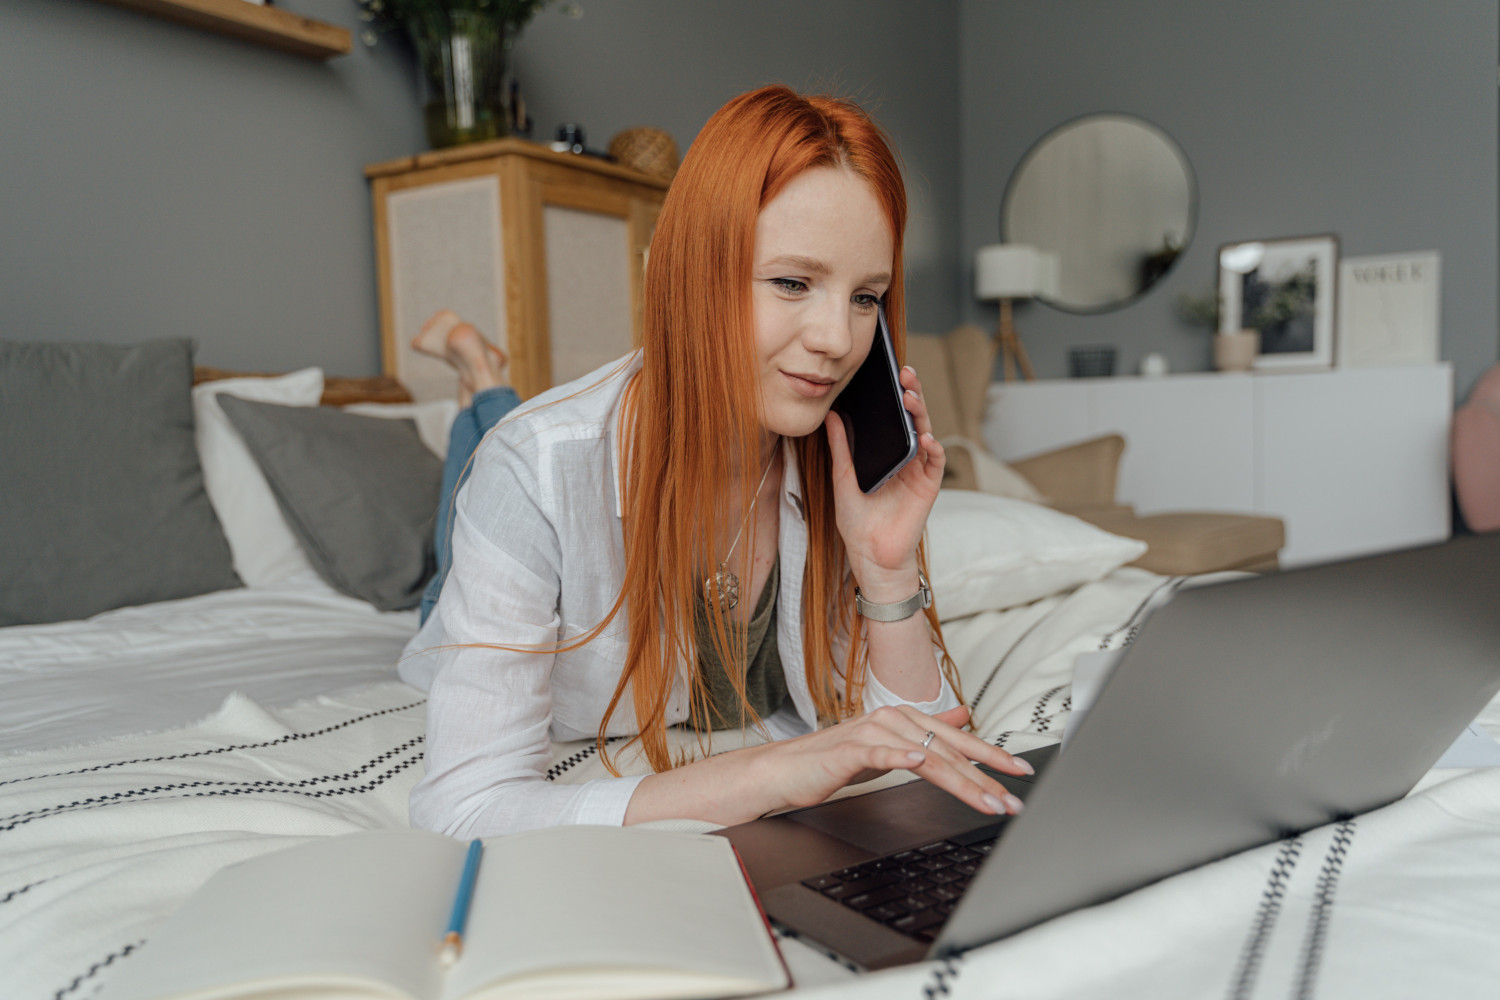 Een vrouw ligt op bed met haar laptop en belt met haar telefoon in haar linkerhand